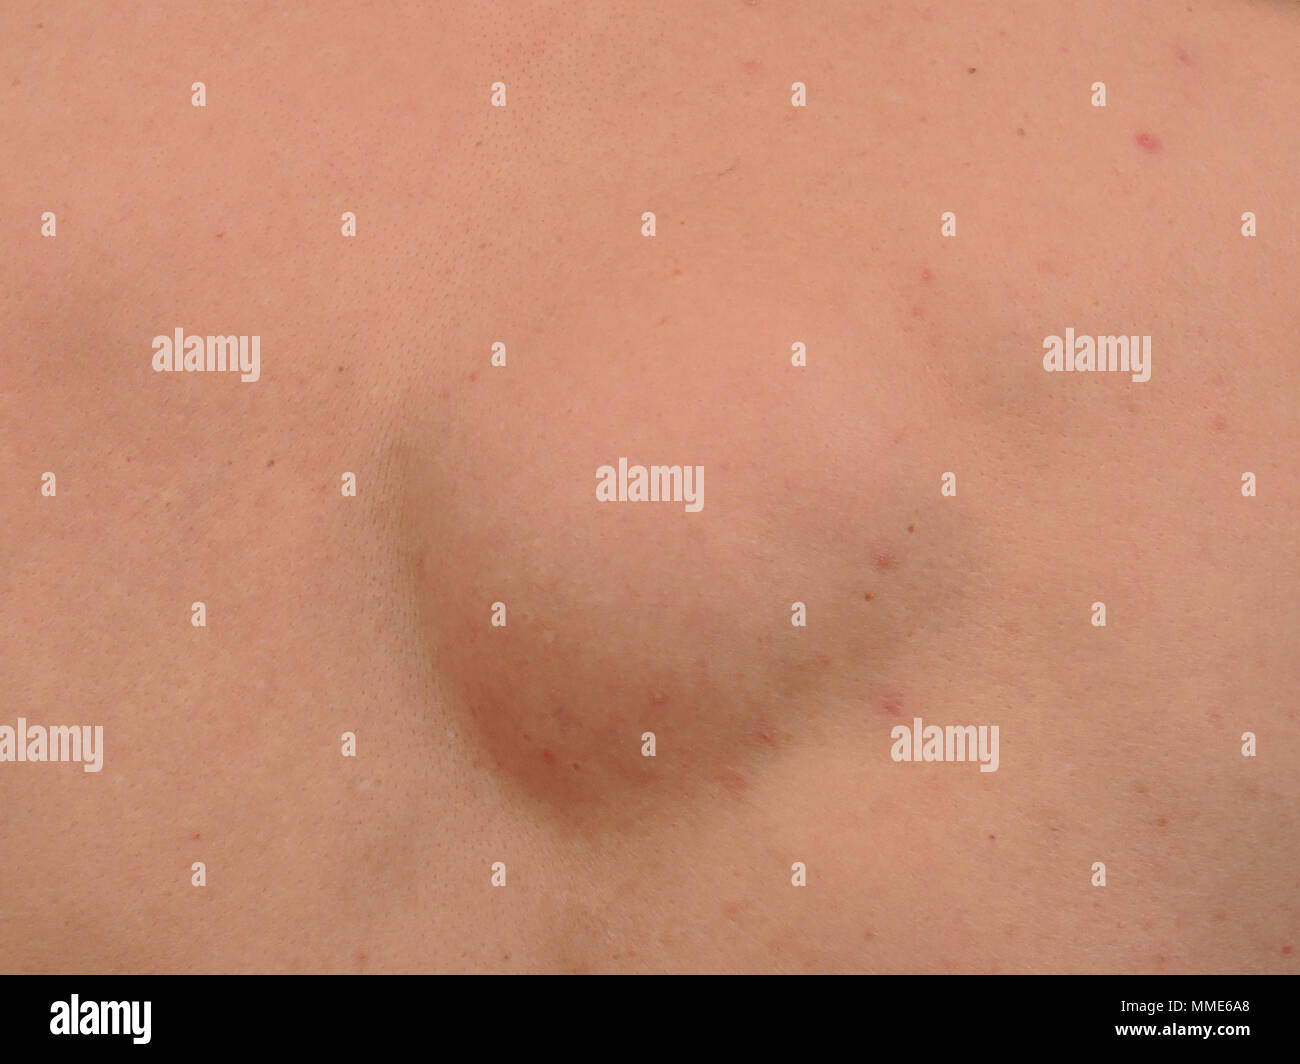 Fatty Lipoma Immagini e Fotos Stock - Alamy